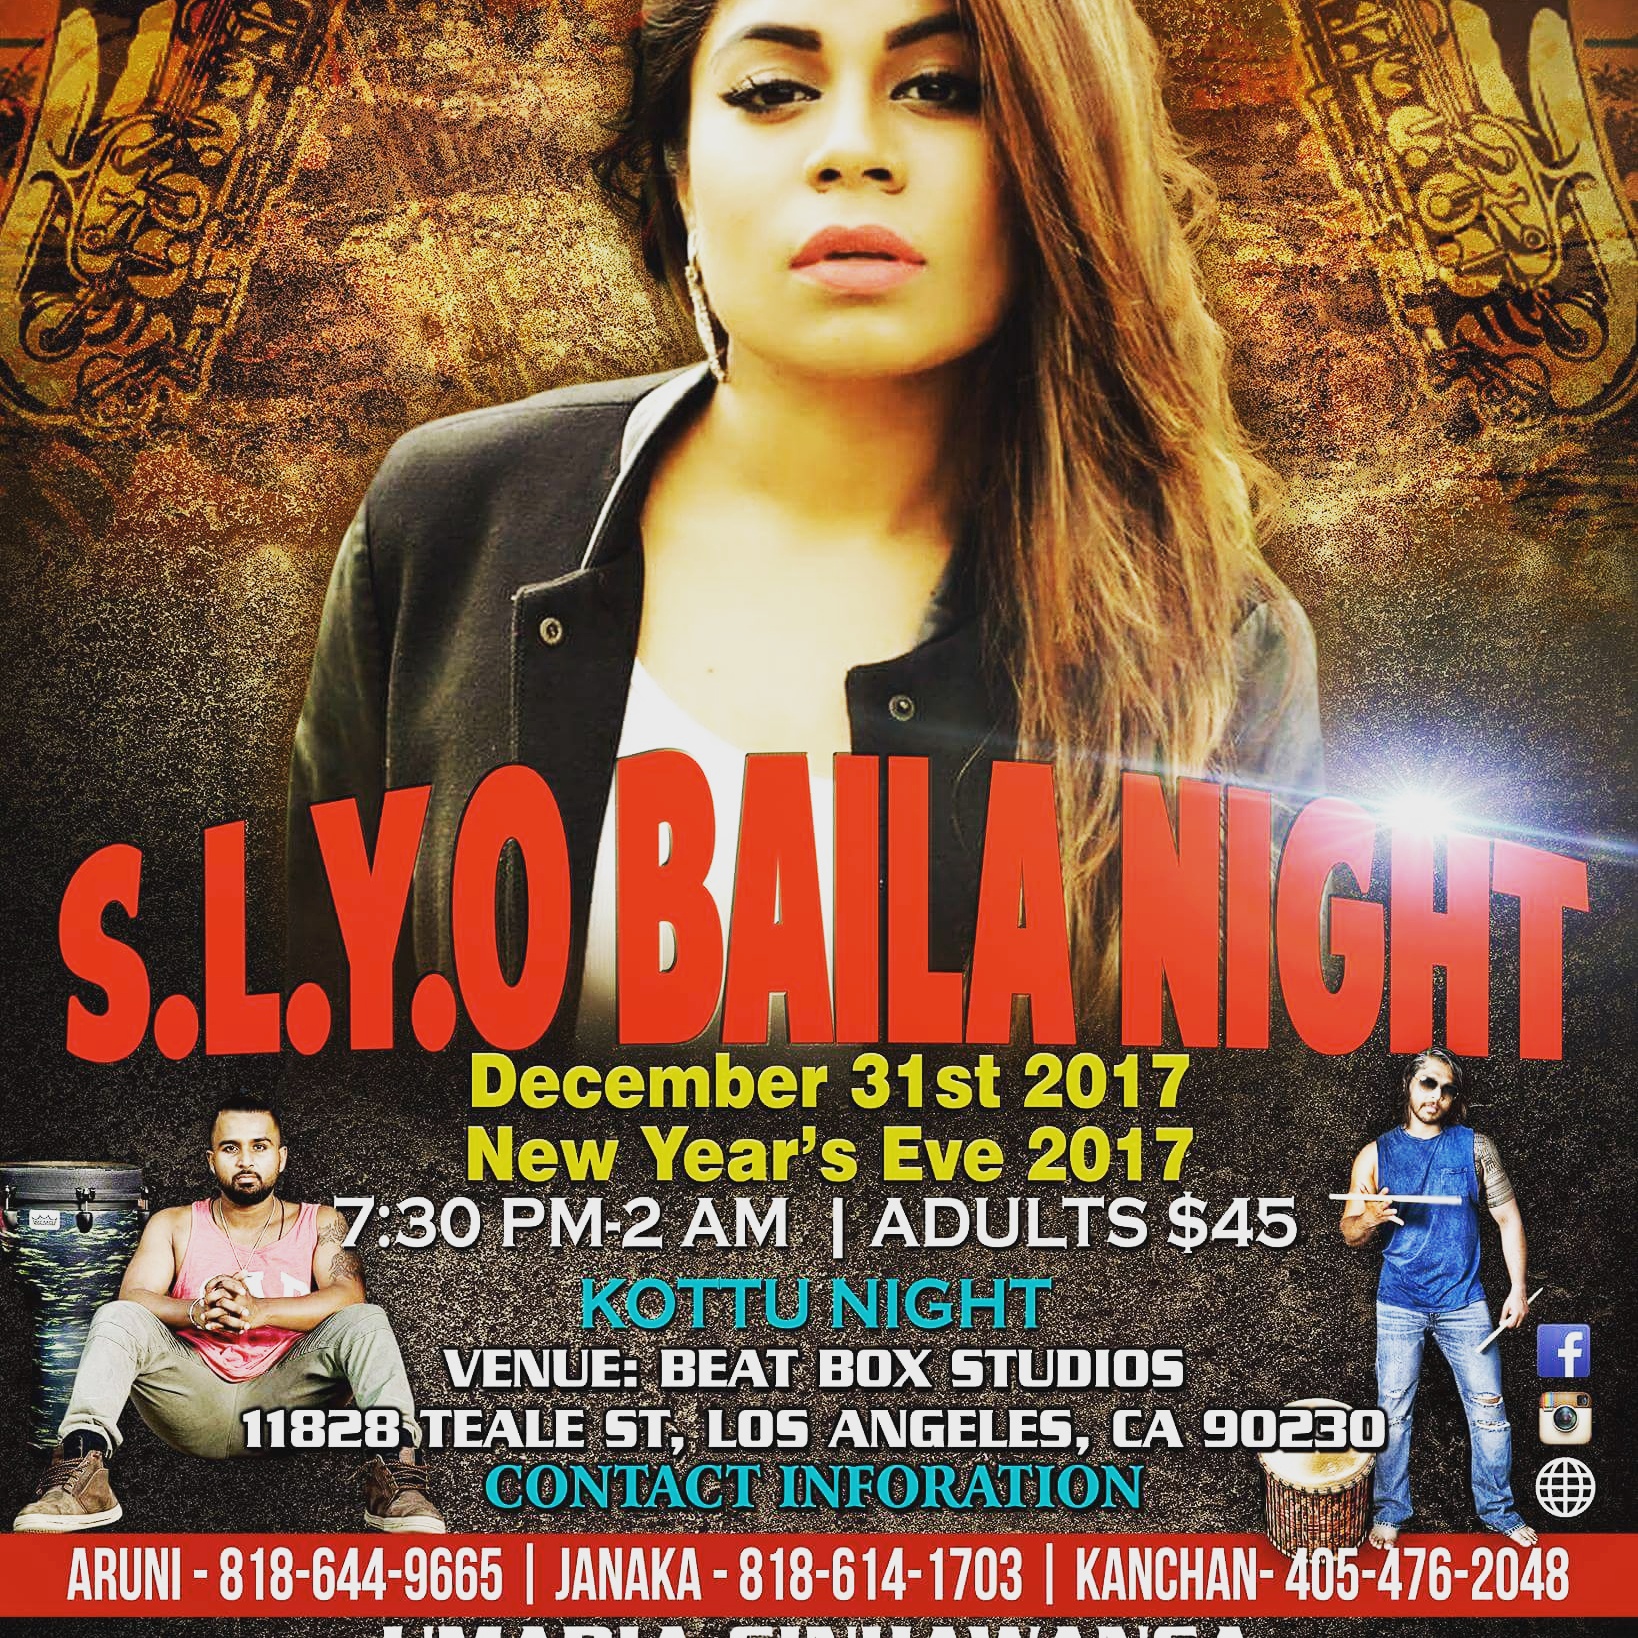 S.L.Y.O Baila Night, New Year's Eve 2017